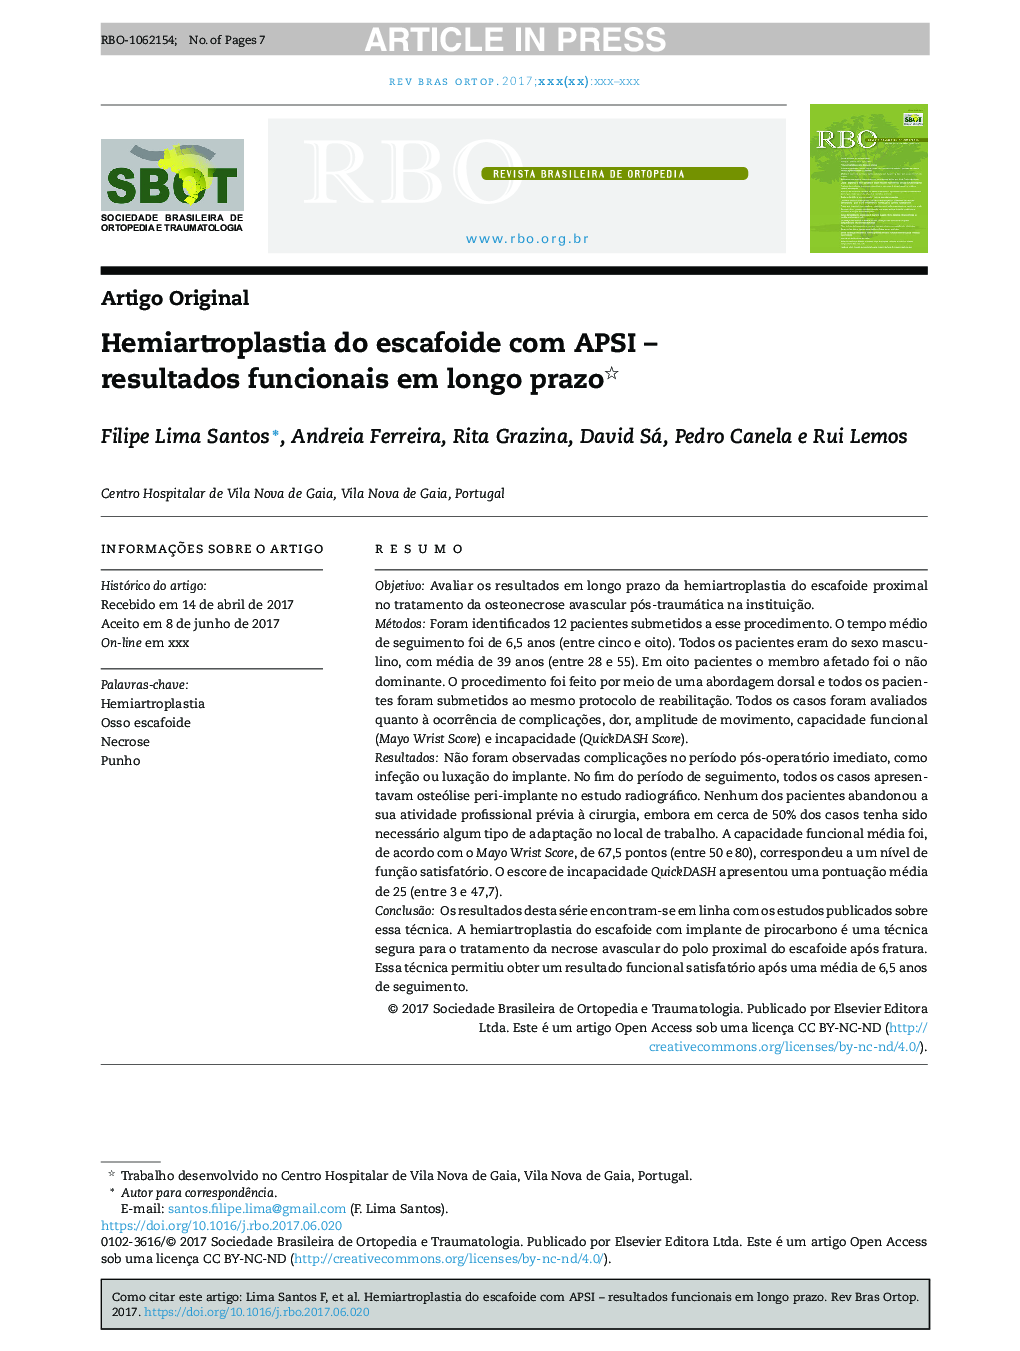 Hemiartroplastia do escafoide com APSI - resultados funcionais em longo prazo